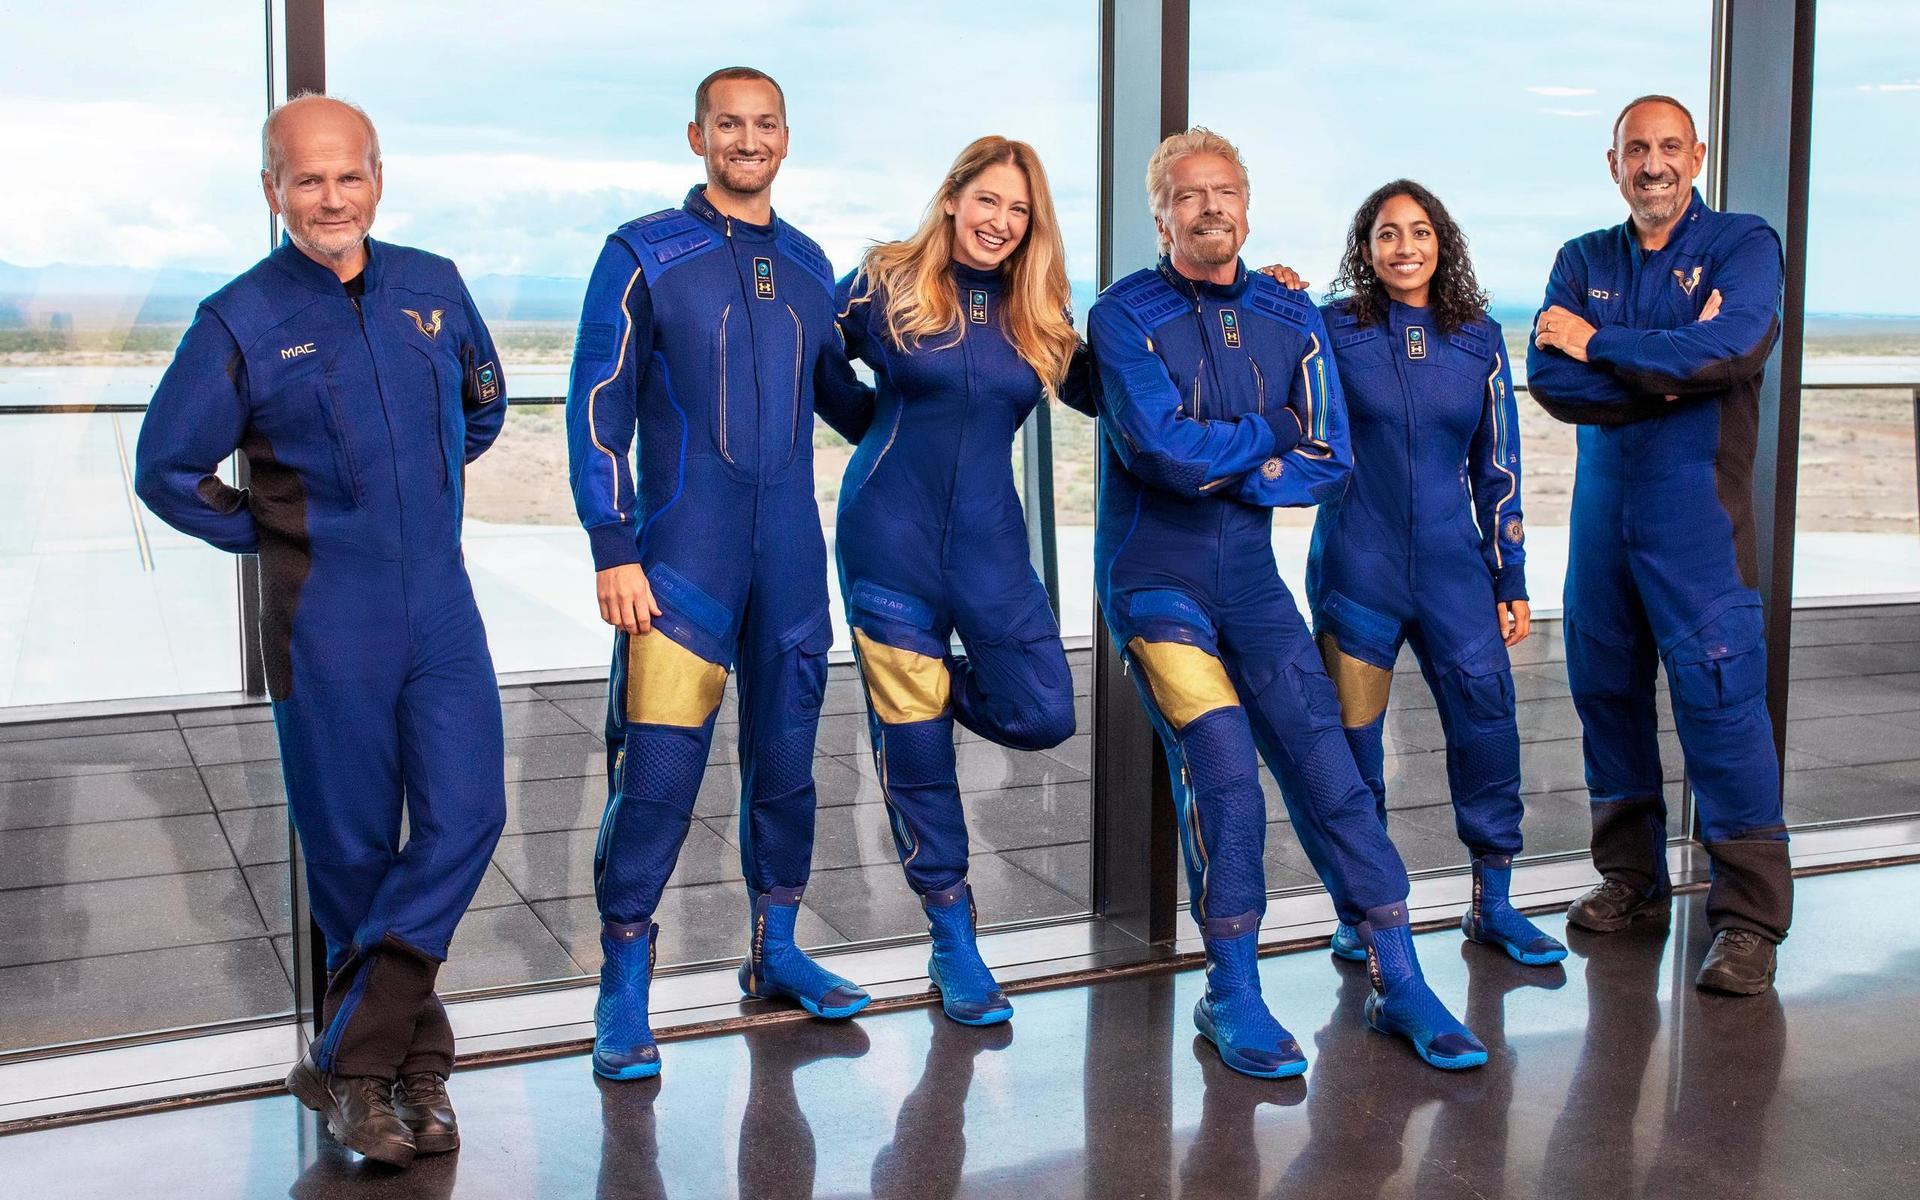 Besättningen som ska testflyga rymdplanet ”Unity 22”. Virgin Galactics grundare Richard Branson är tredje personen från höger på bilden.